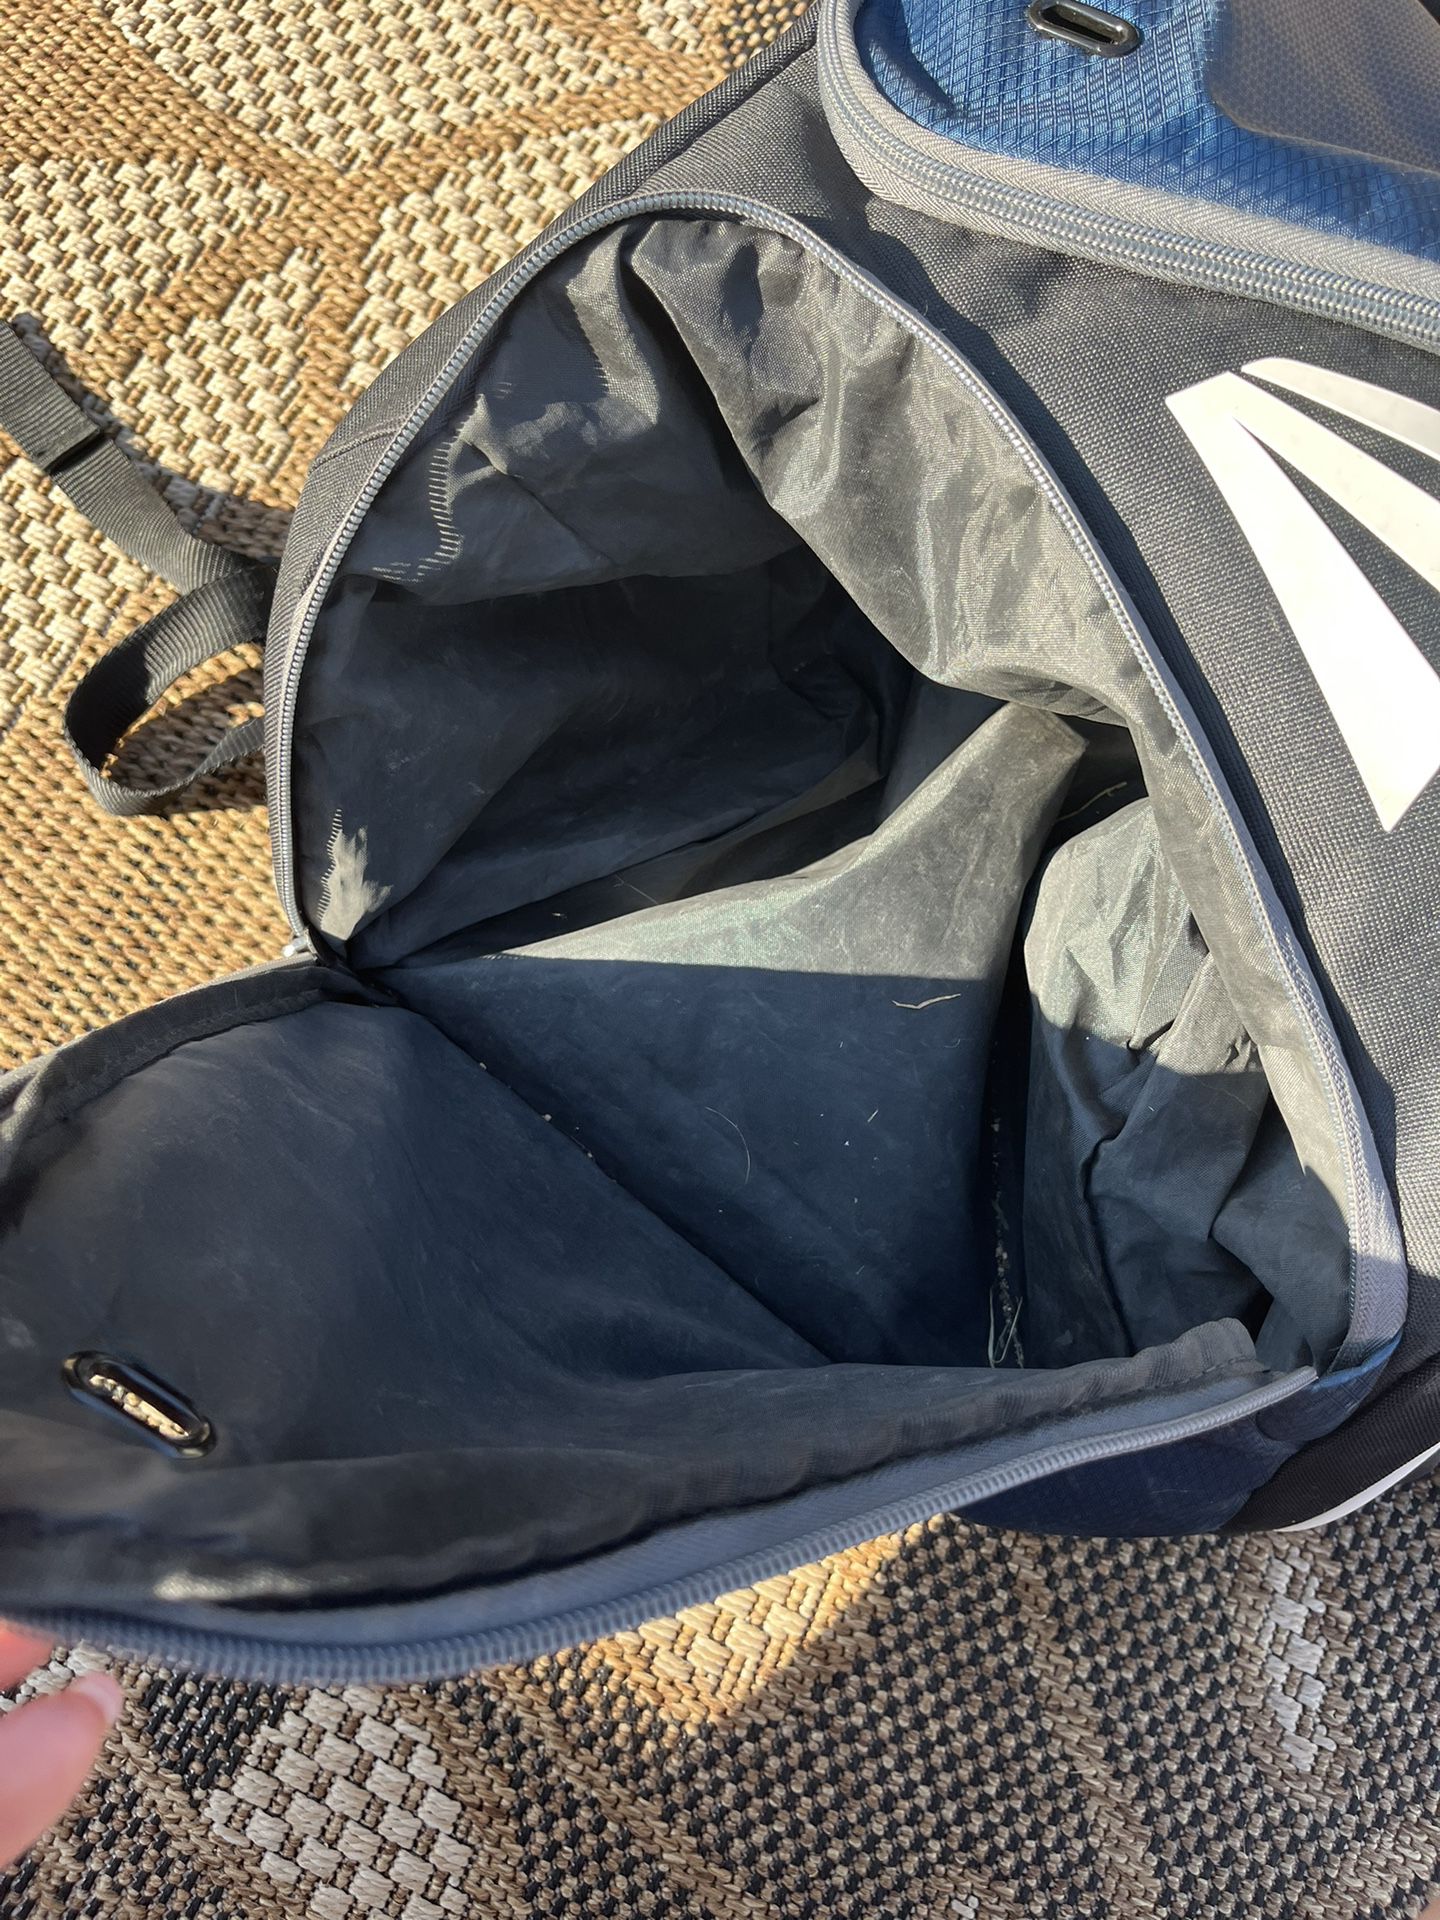 Easton Baseball / Softball Glove & Bat, Navy Blue Sport Backpack